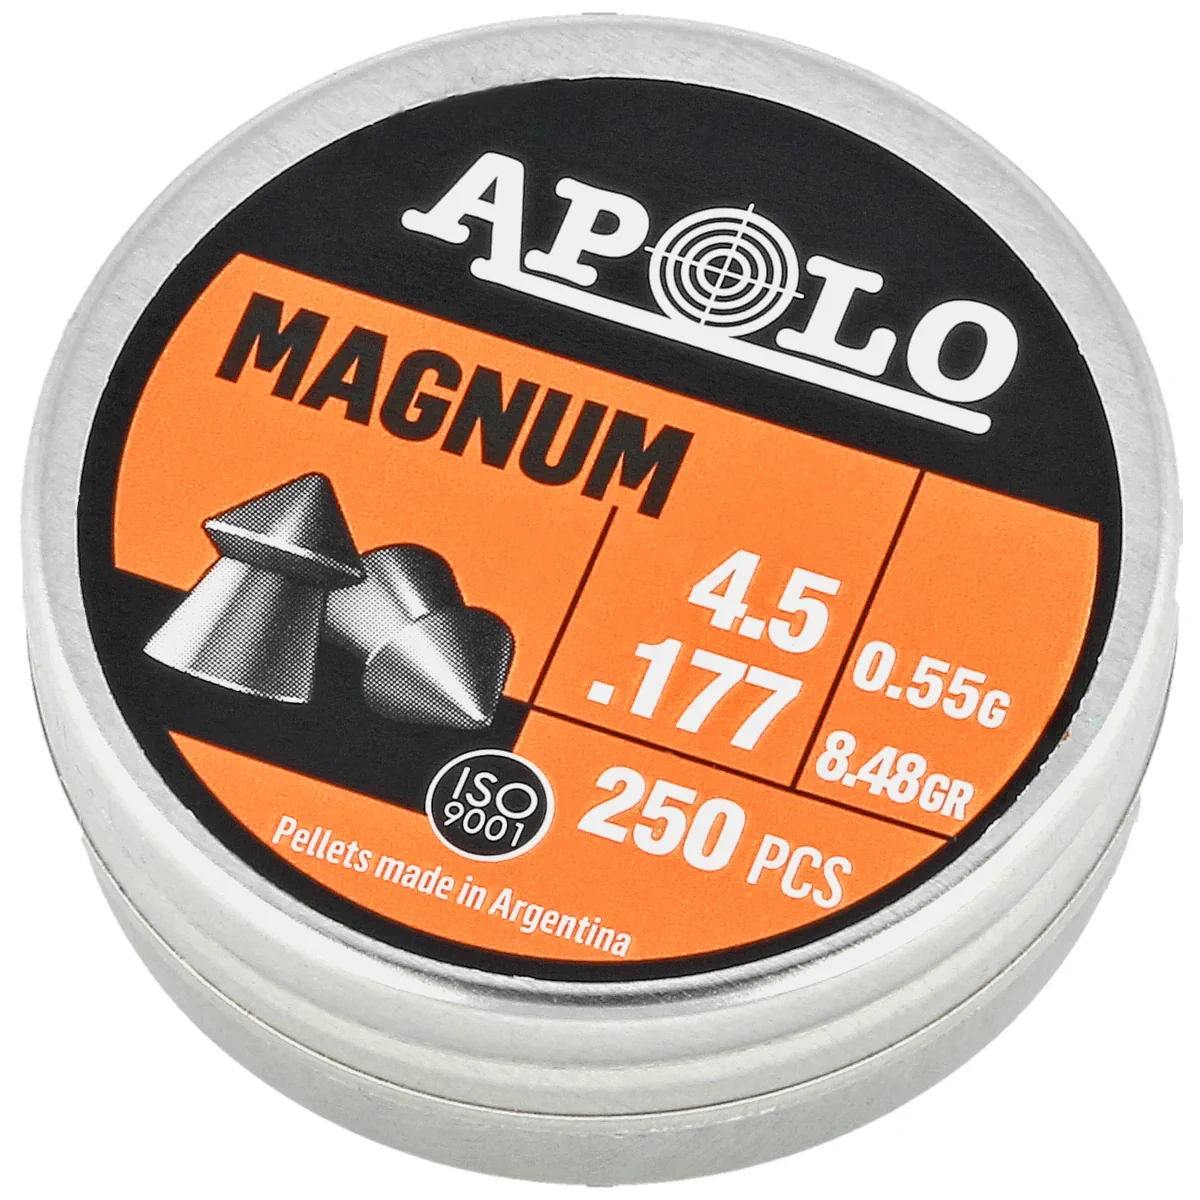 Apolo Magnum .177 / 4.5 mm AirGun Pellets, 250 psc 0.55g/8.48gr (12002)